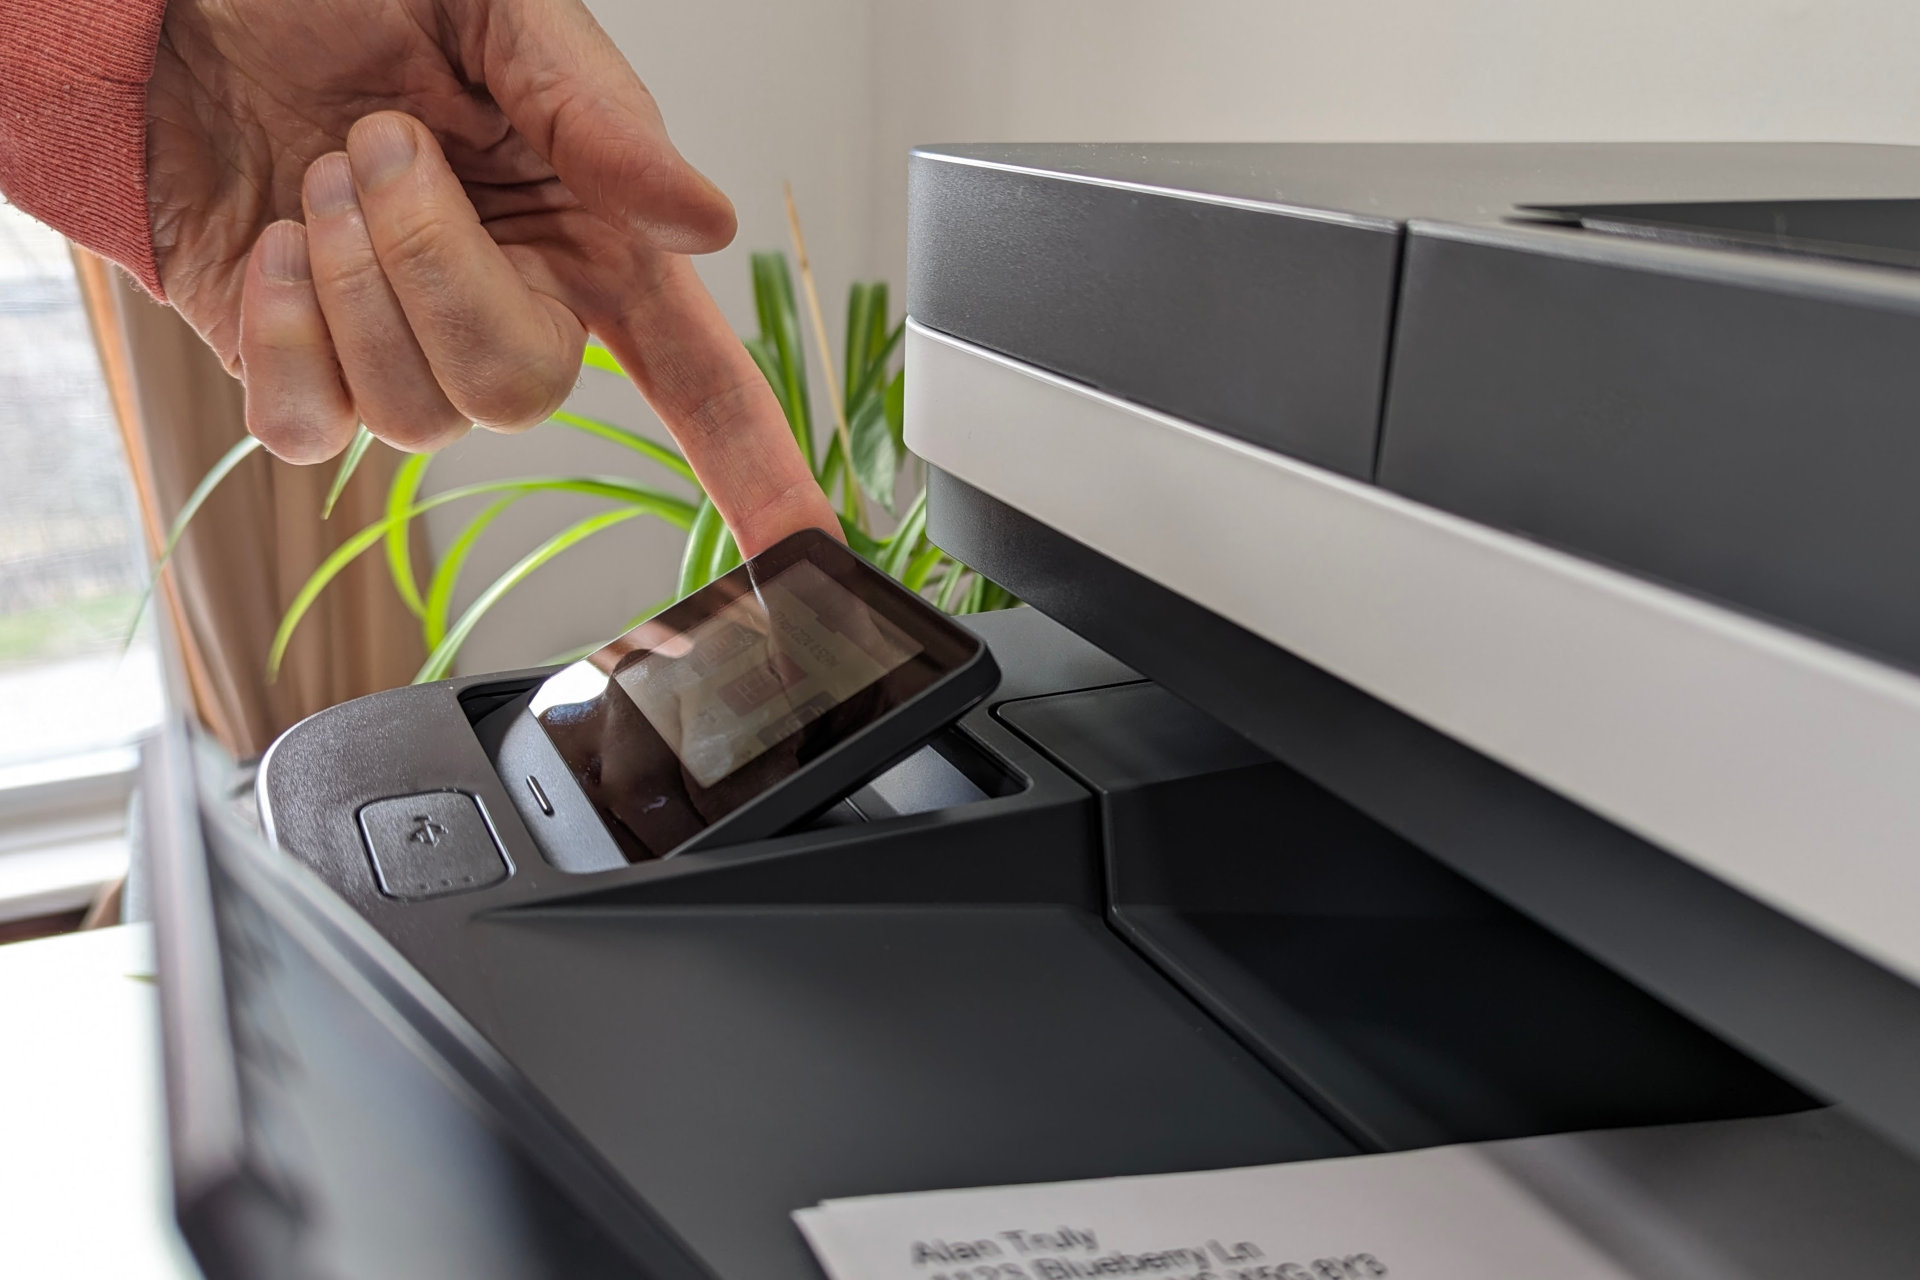 Обзор HP LaserJet Pro MFP 3101fdw: быстрый бизнес-принтер для домашнего офиса